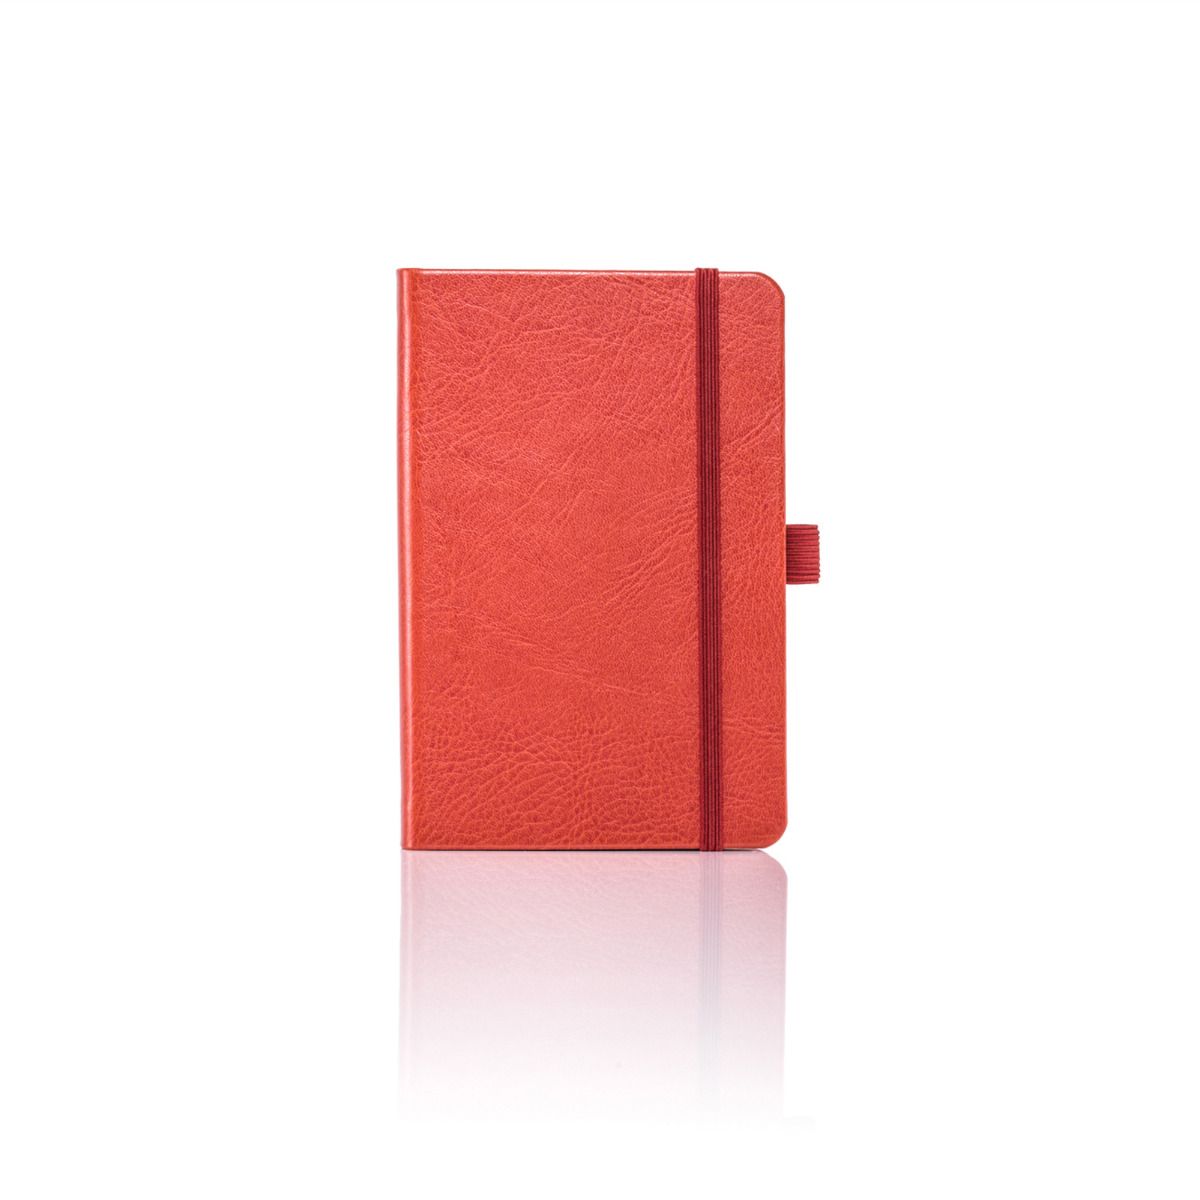 Sherwood Orange Notebooks and Notepads